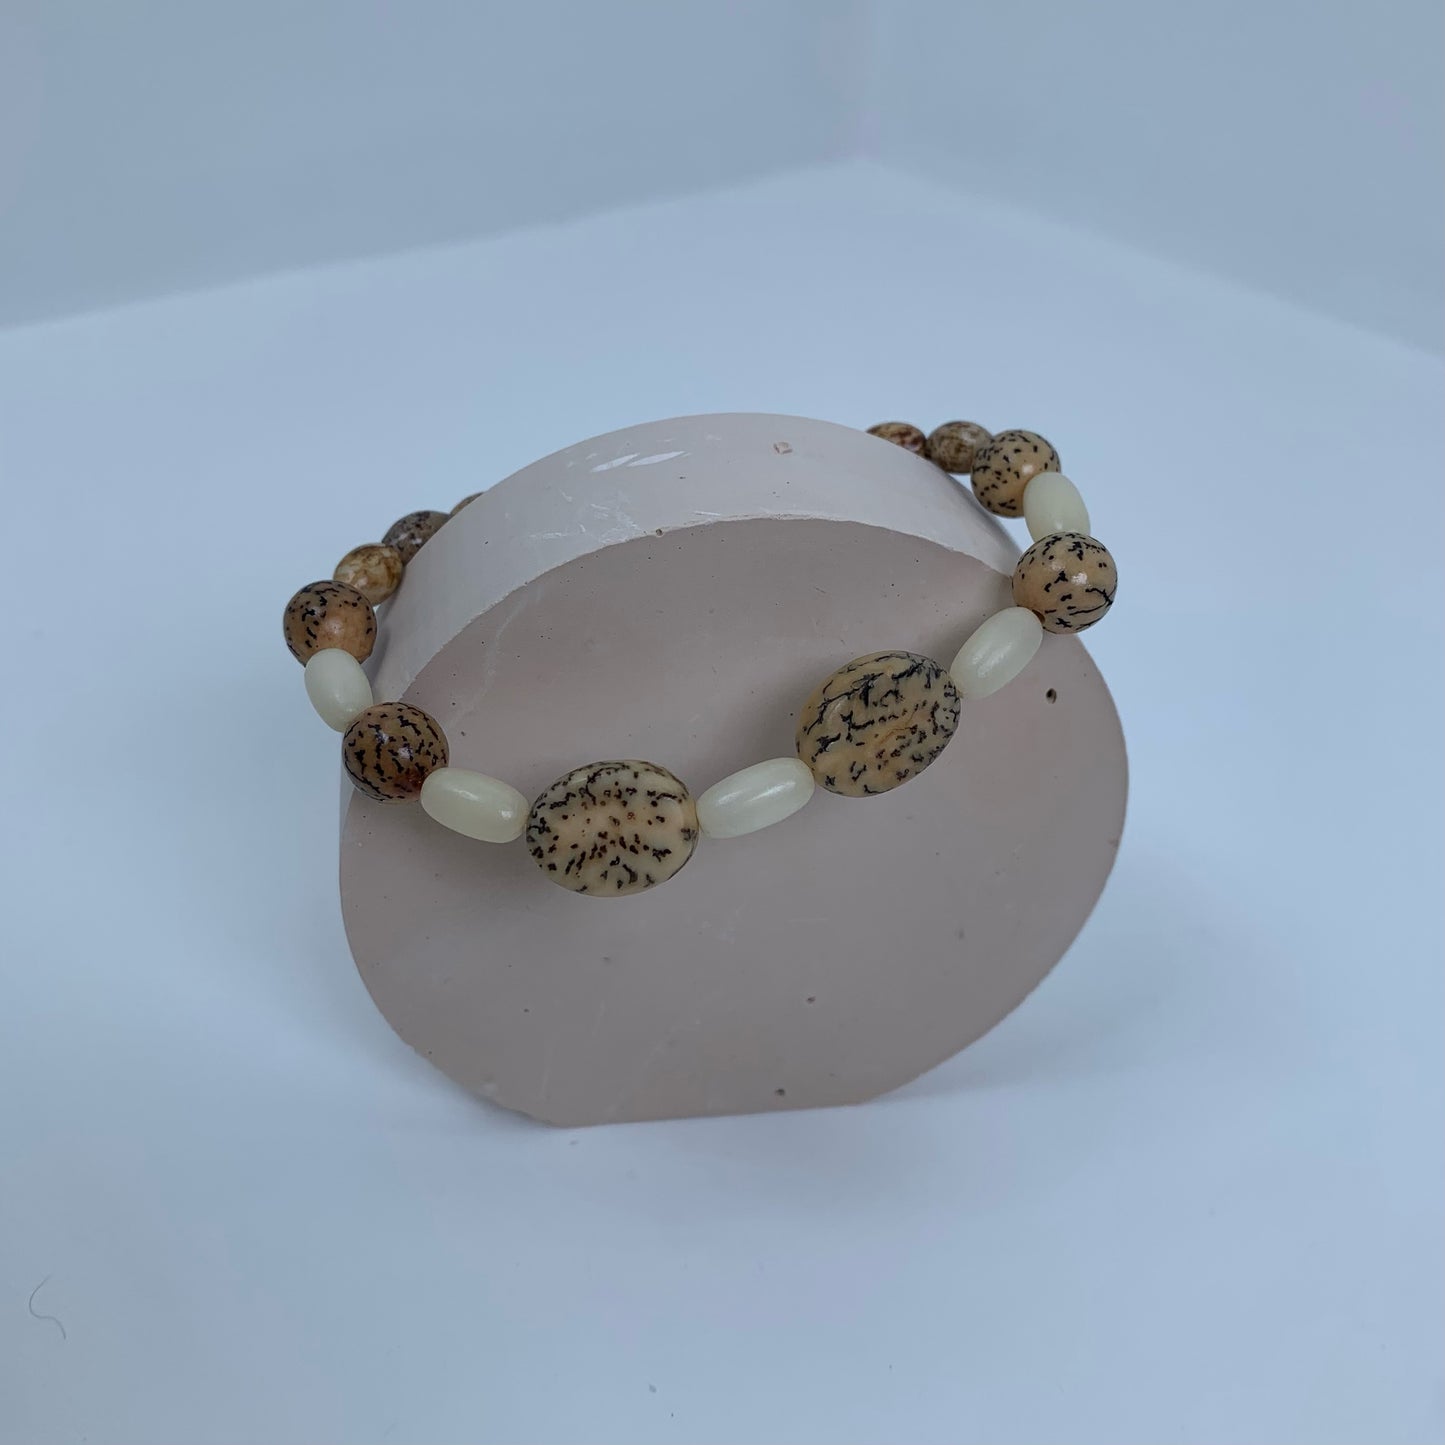 Handmade Wooden Bead Bracelet